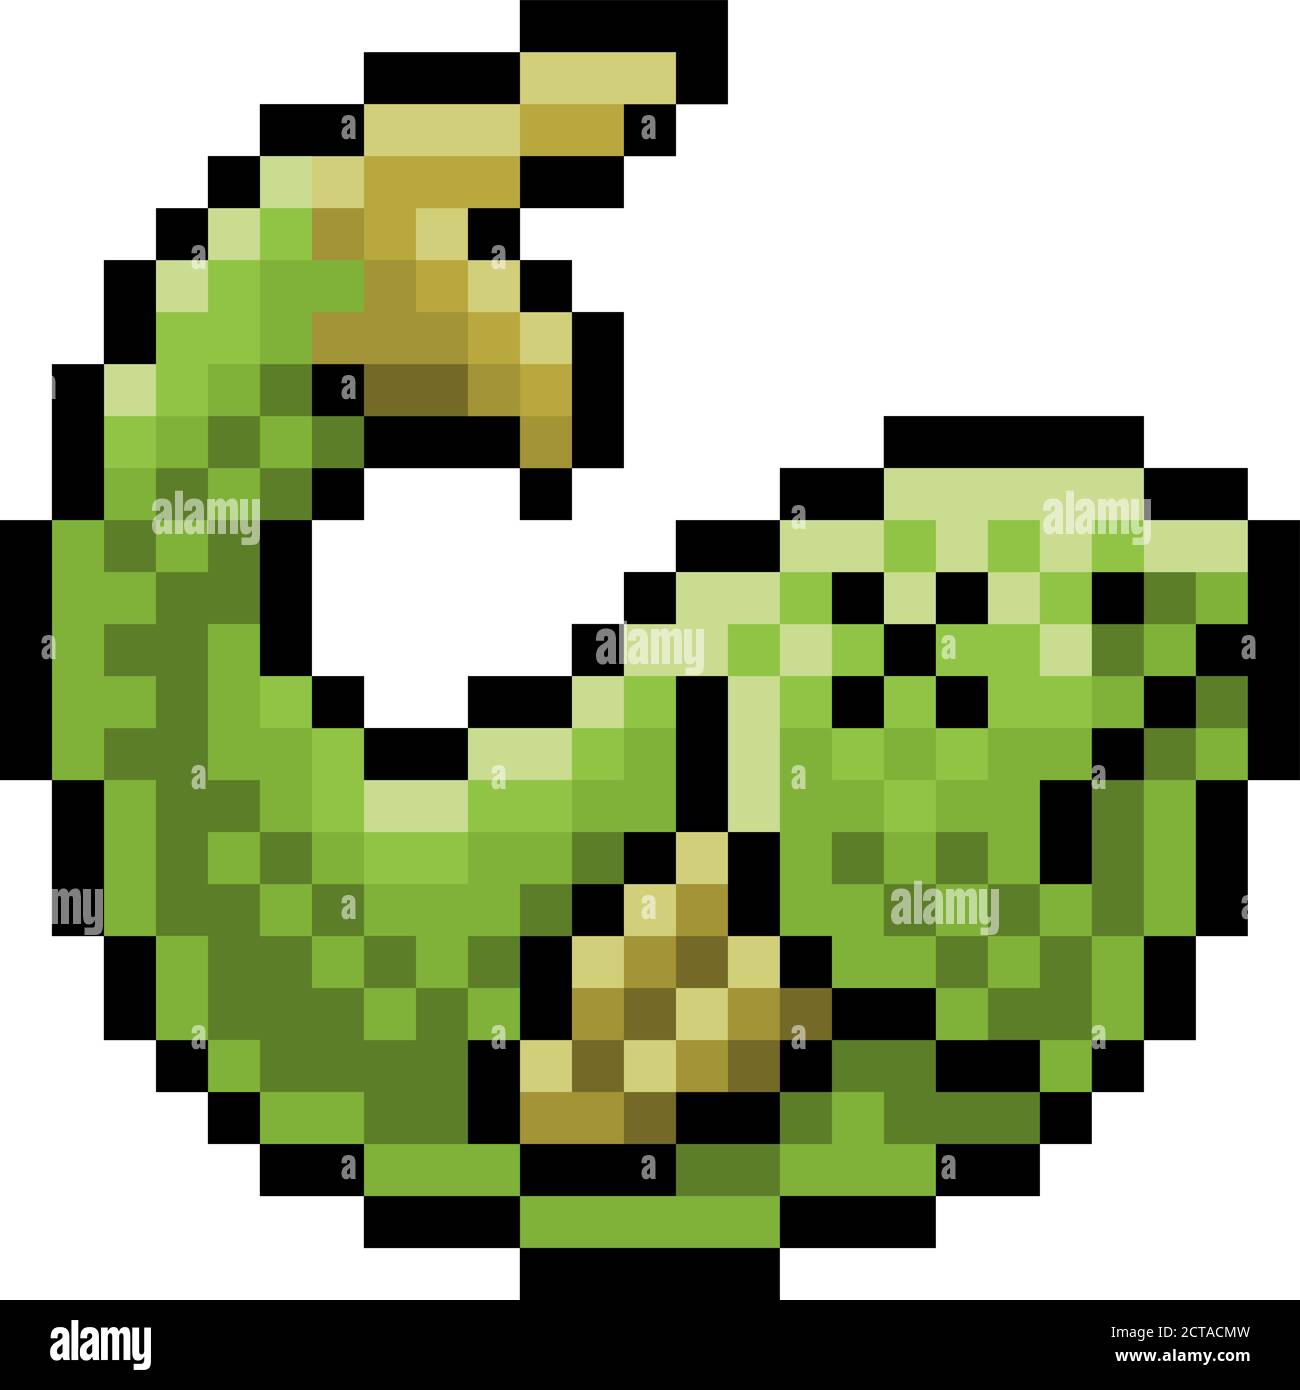 Pixilart - Google Snake Game by Golden-Angel